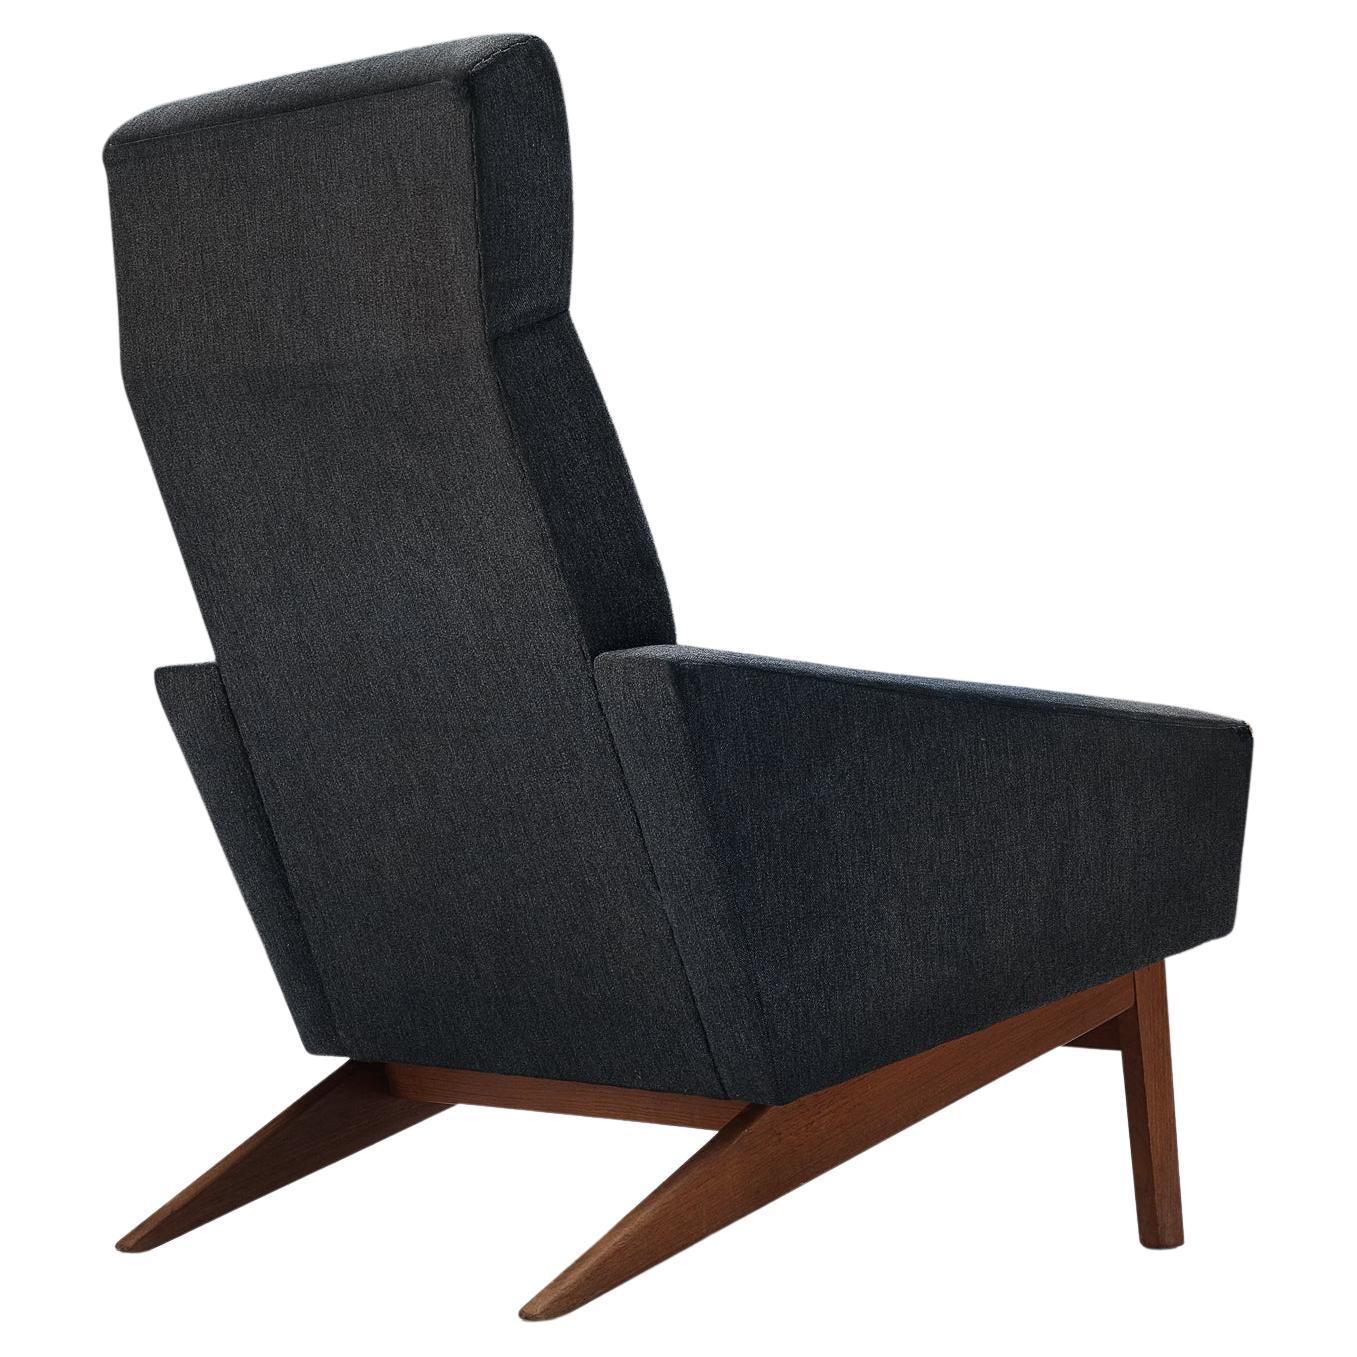 Chaise haute danoise en tissu gris